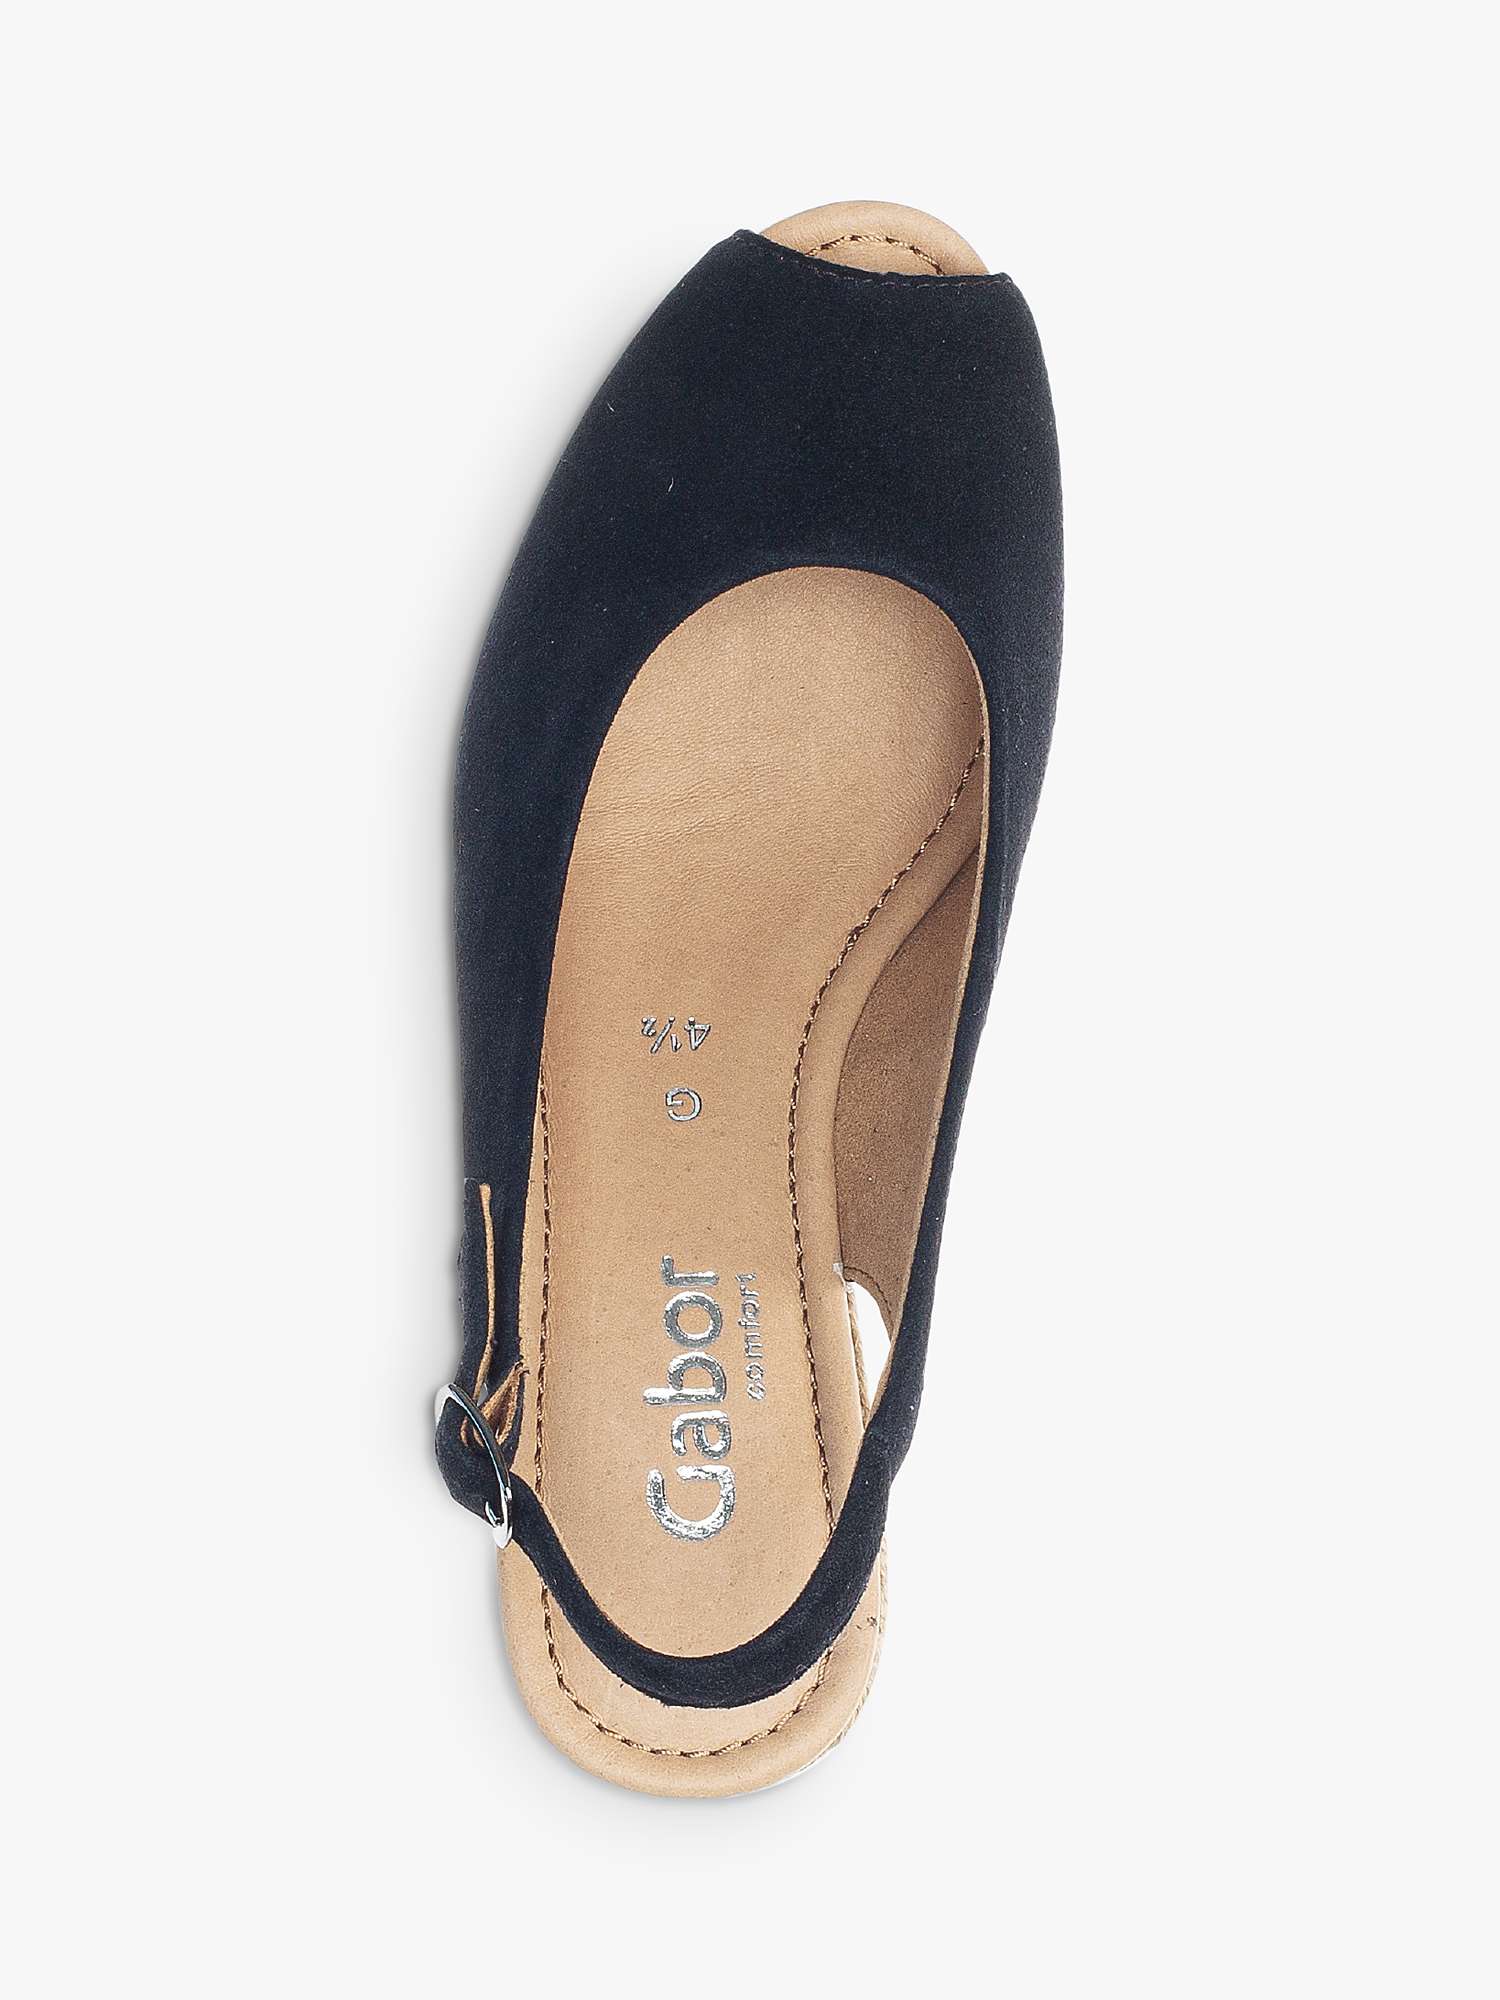 Buy Gabor Tandy Wide Fit Peep Toe Wedge Sandals, Dark Blue Online at johnlewis.com